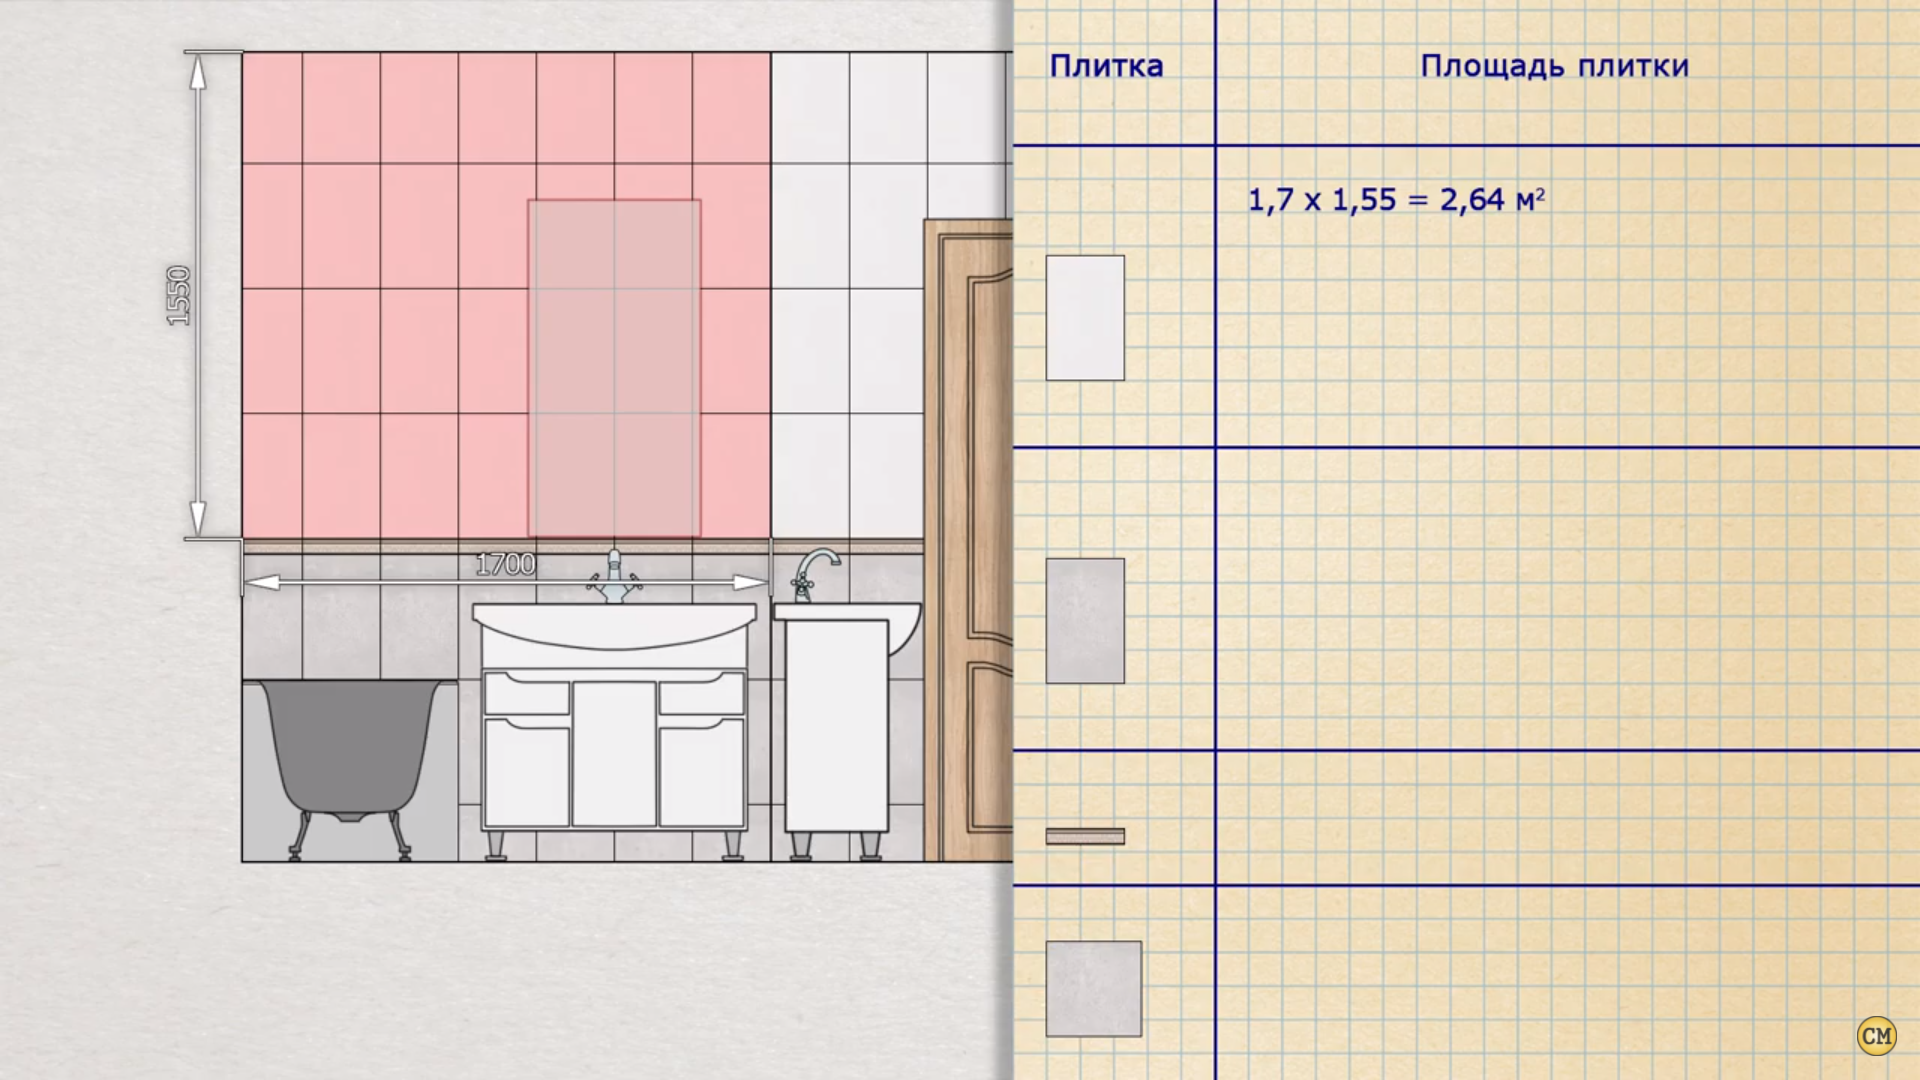 Расчет количества плитки для ванной комнаты